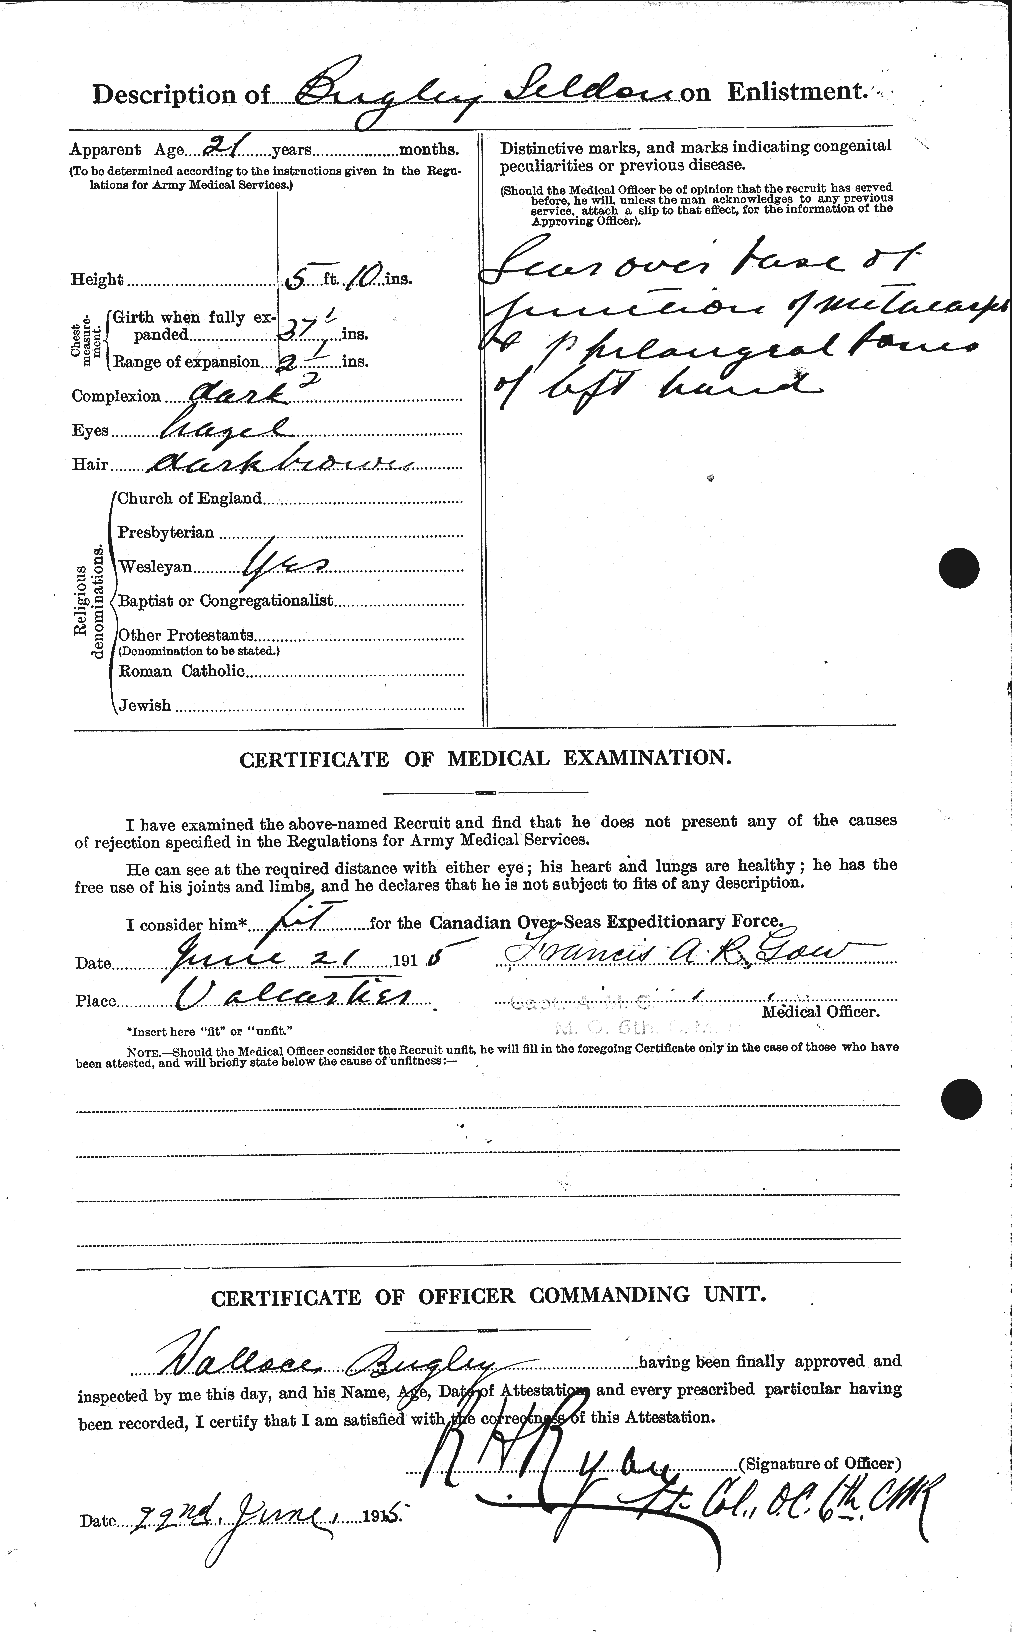 Dossiers du Personnel de la Première Guerre mondiale - CEC 270532b